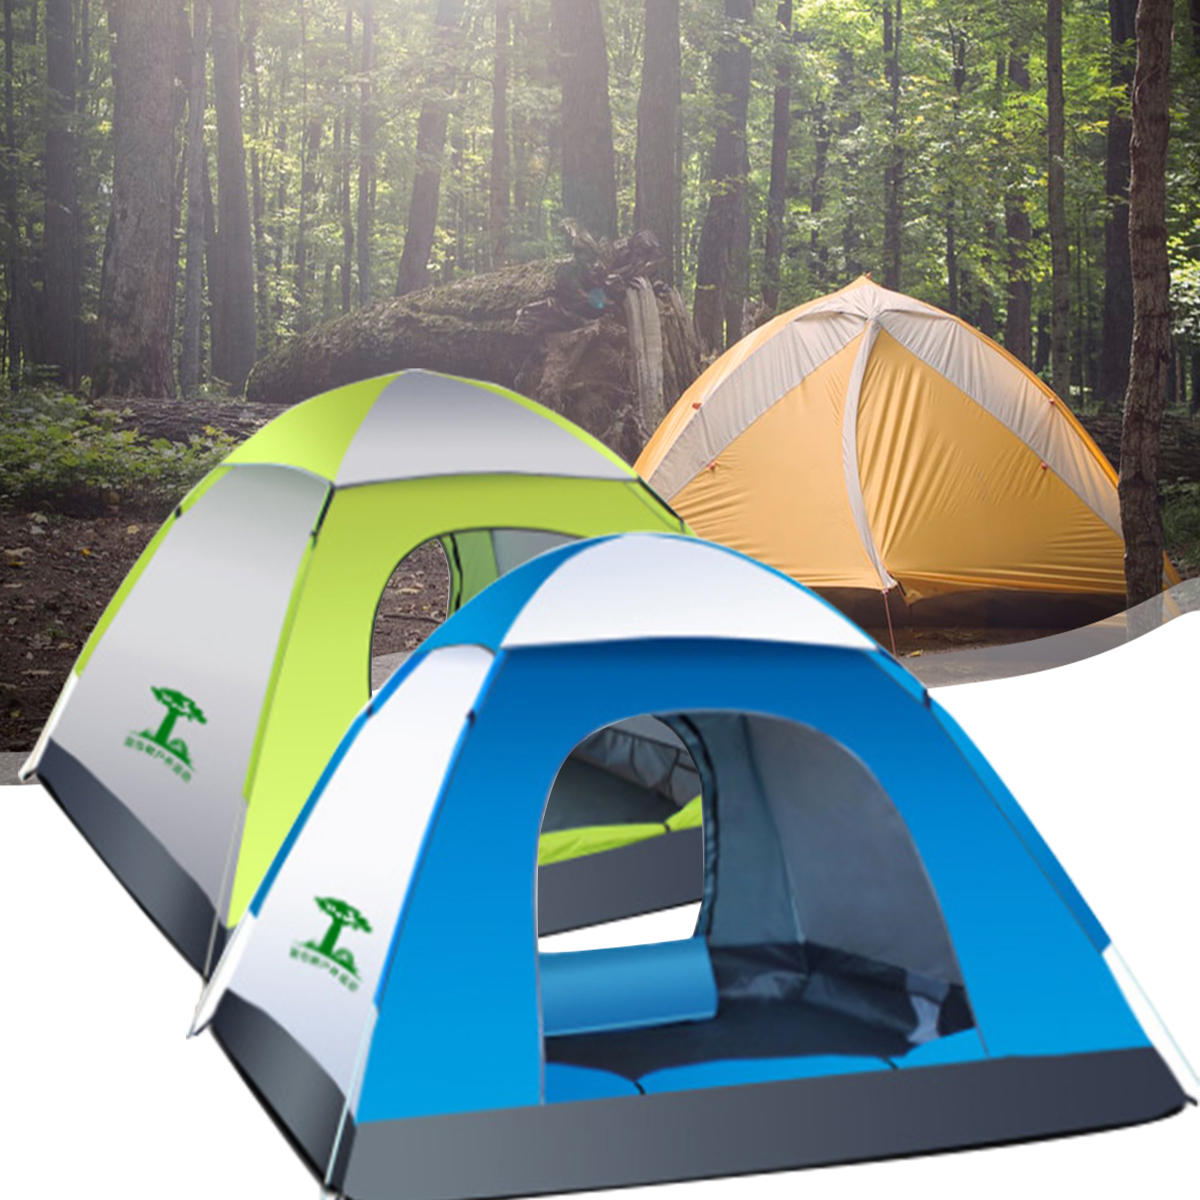 Tente automatique imperméable pour 3-4 personnes pour le camping en plein air, en tissu Oxford 210D, tente de plage de voyage.